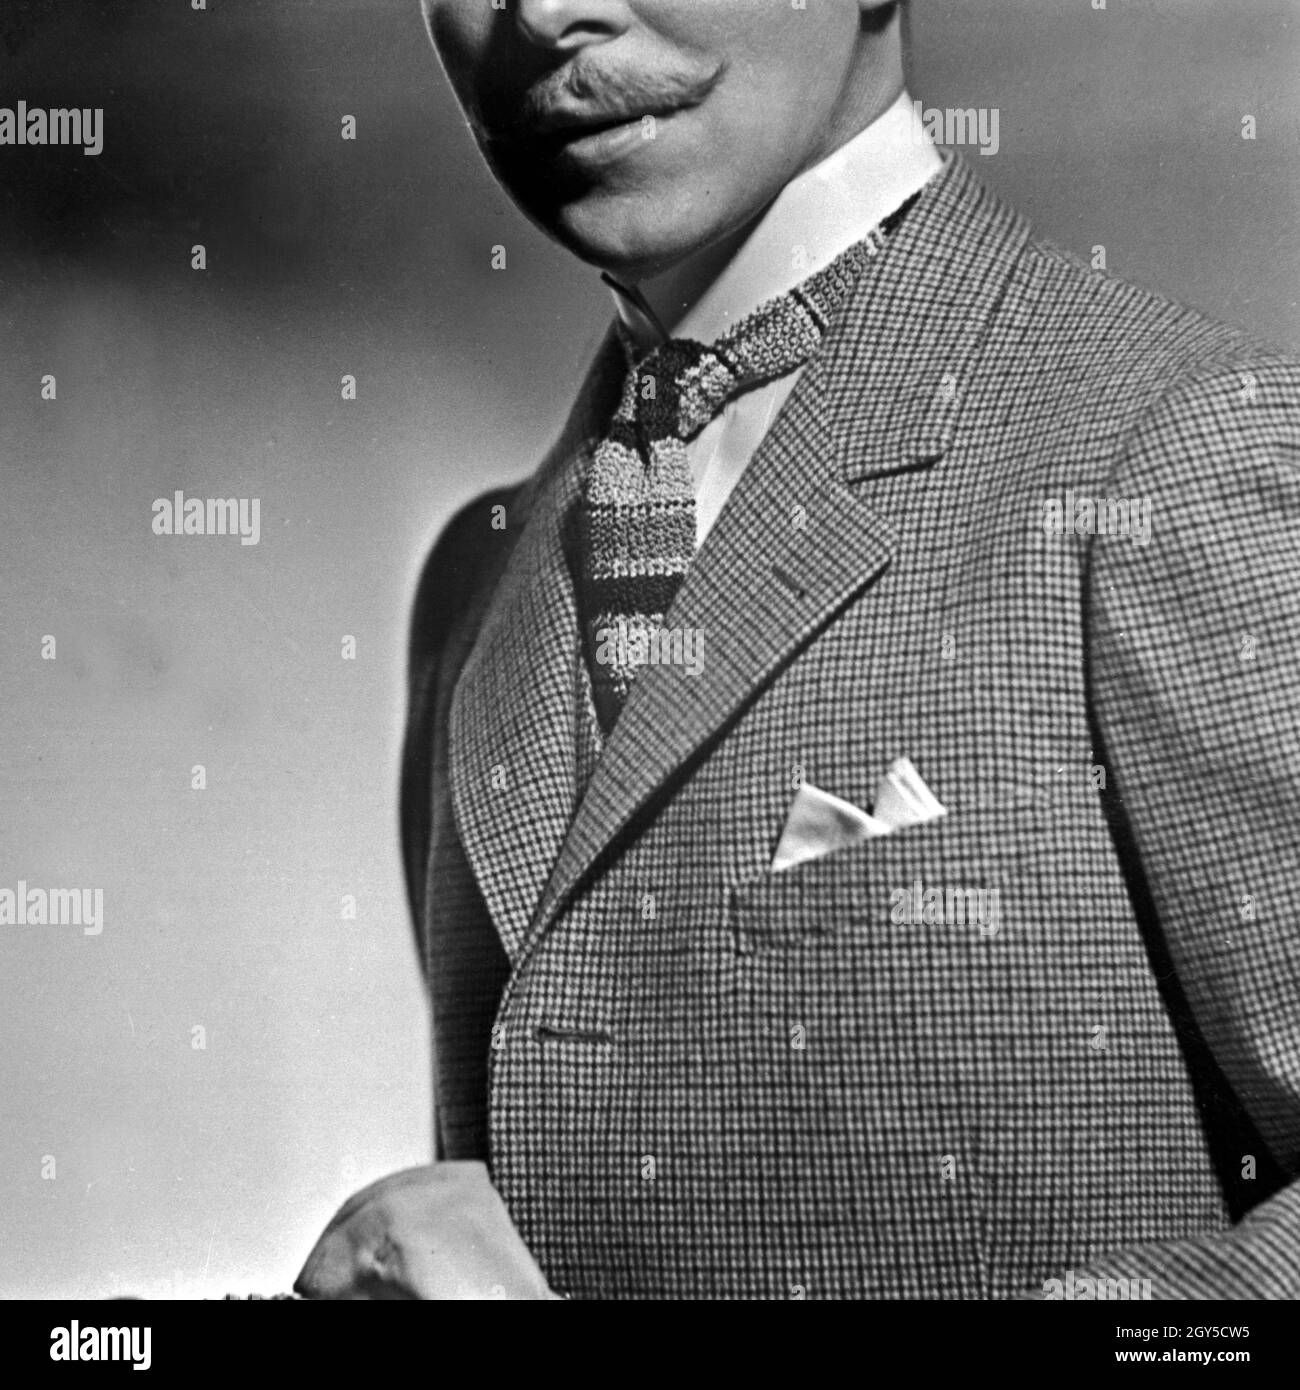 Krawattenmode, Deutschland 1930er Jahre. Krawatte Mode, Deutschland 1930  Stockfotografie - Alamy